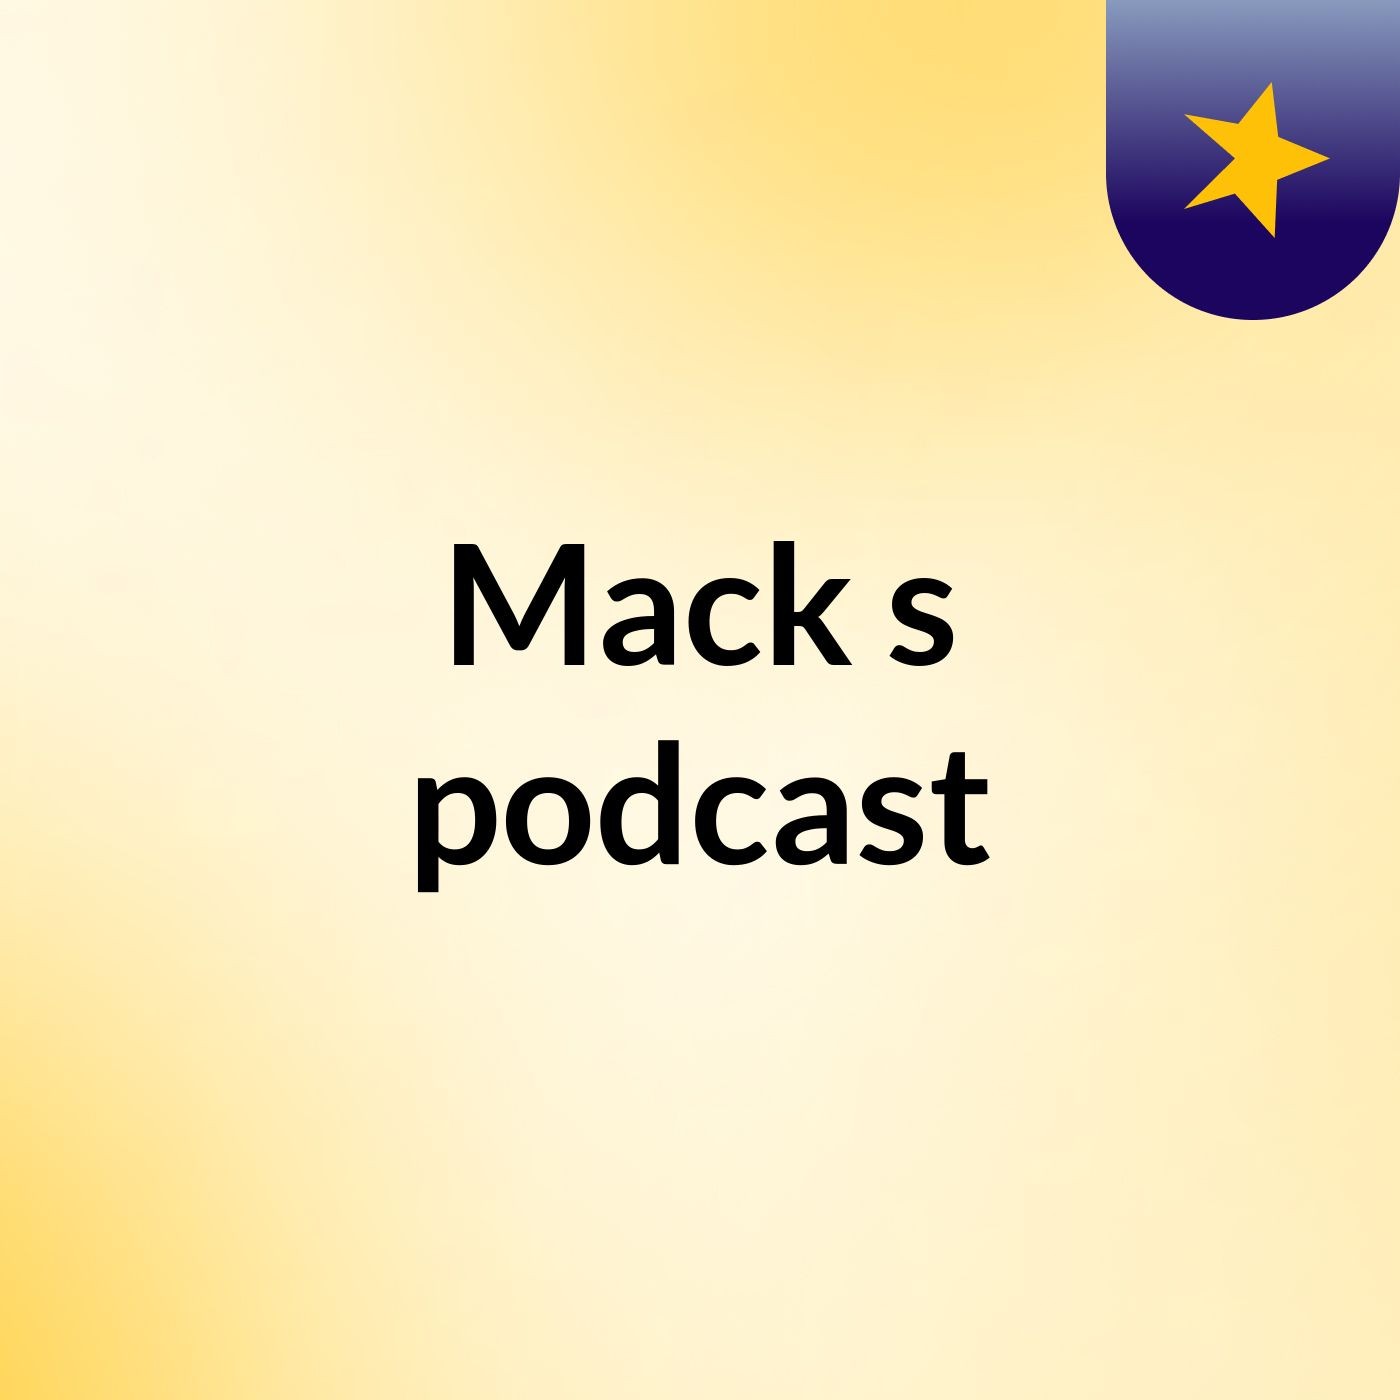 Mack's podcast